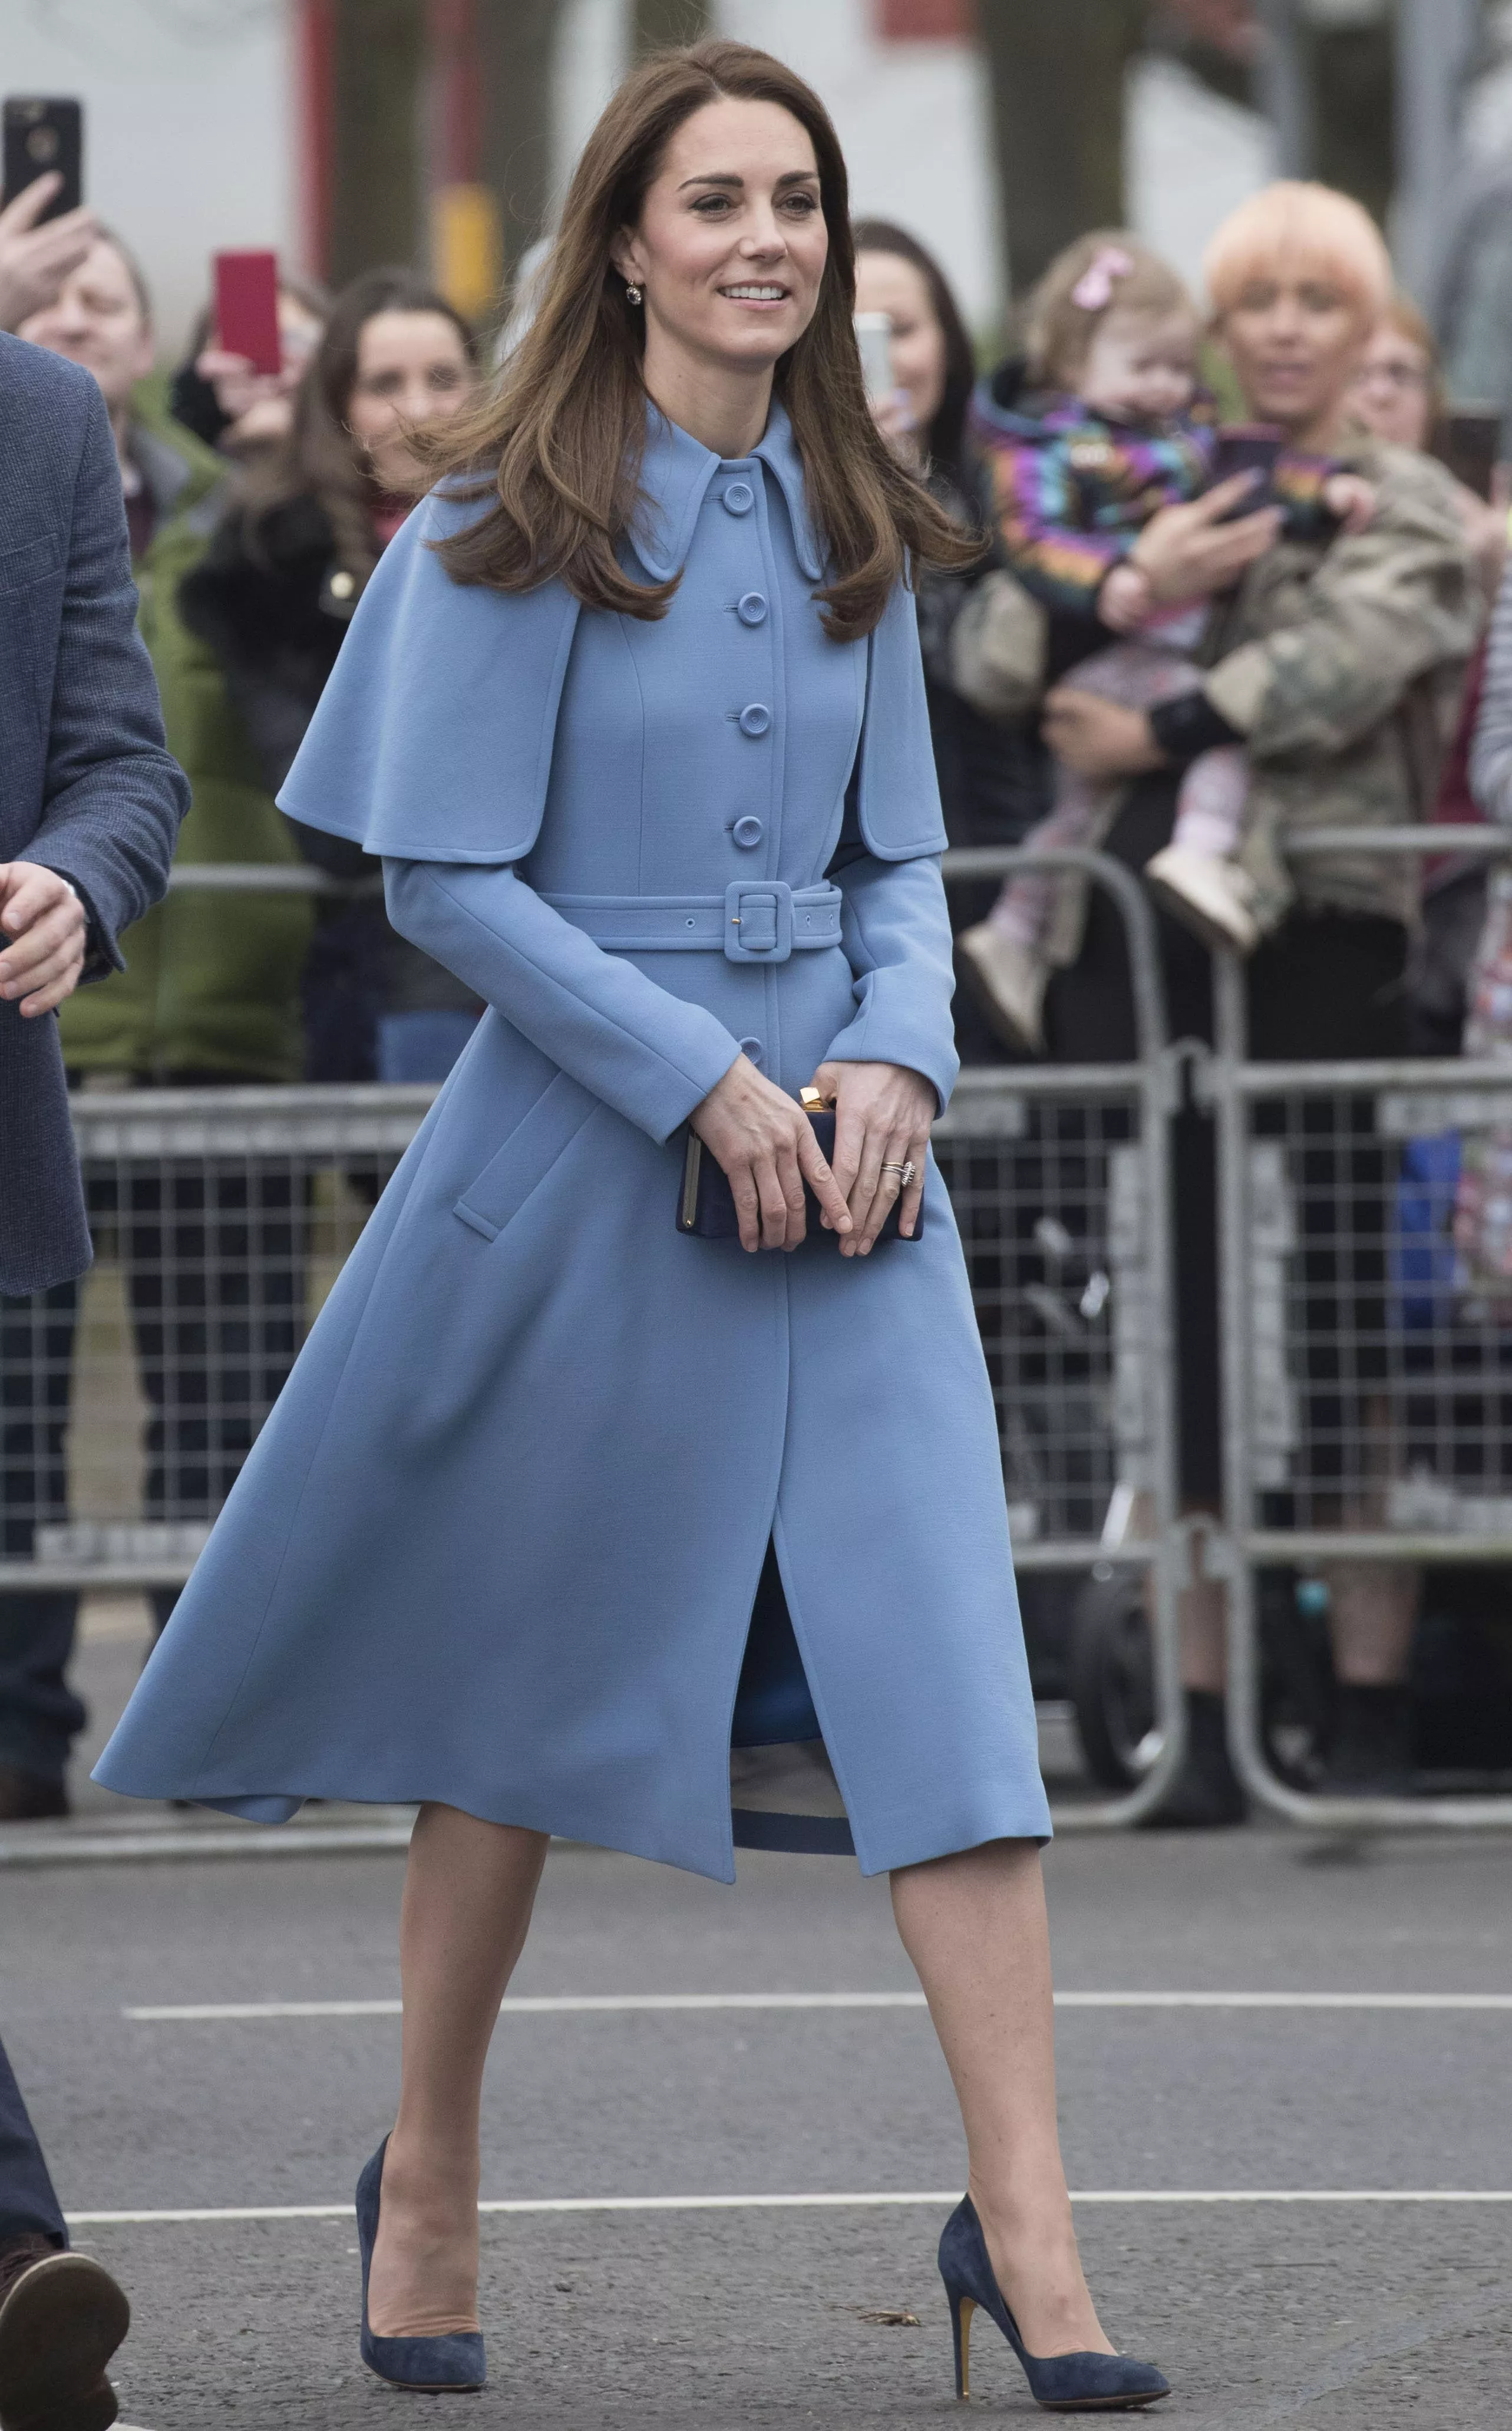 لهذا السبب Kate Middleton لا تطبّق سوى طلاء الأظافر الحياديّ